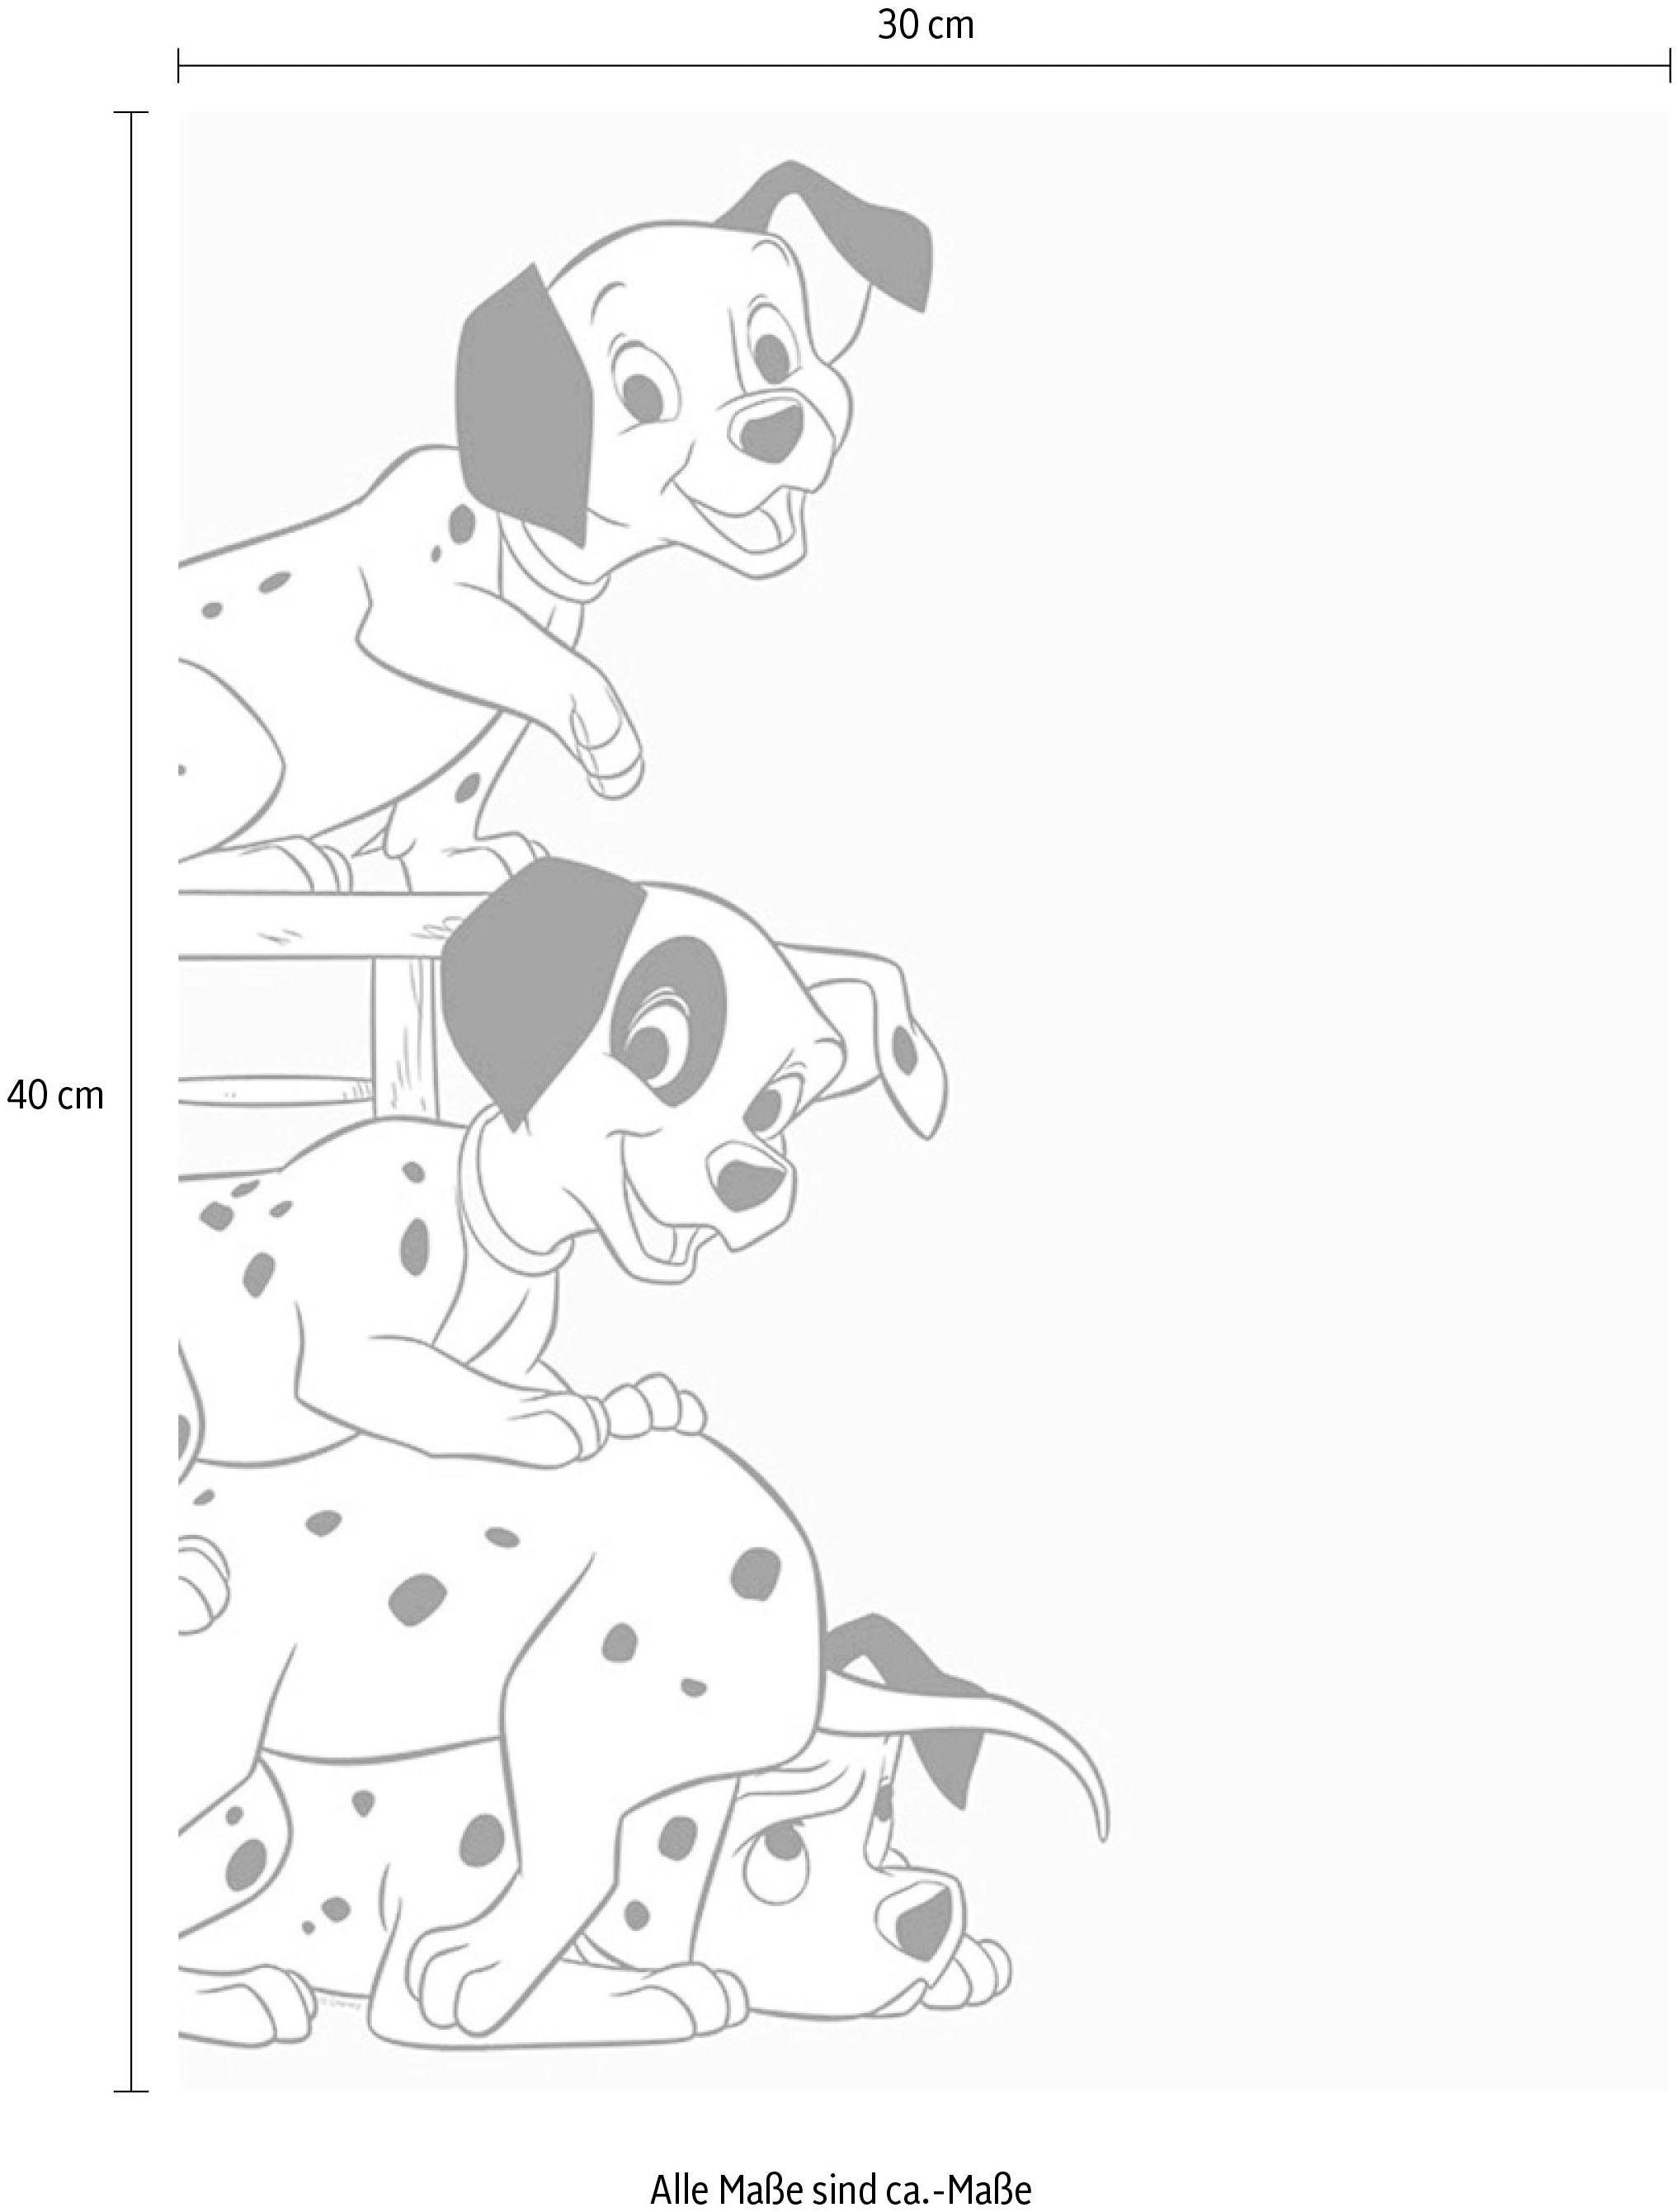 Komar Poster »101 Dalmatiner Playing«, Disney, (1 St.), Kinderzimmer, Schlafzimmer, Wohnzimmer